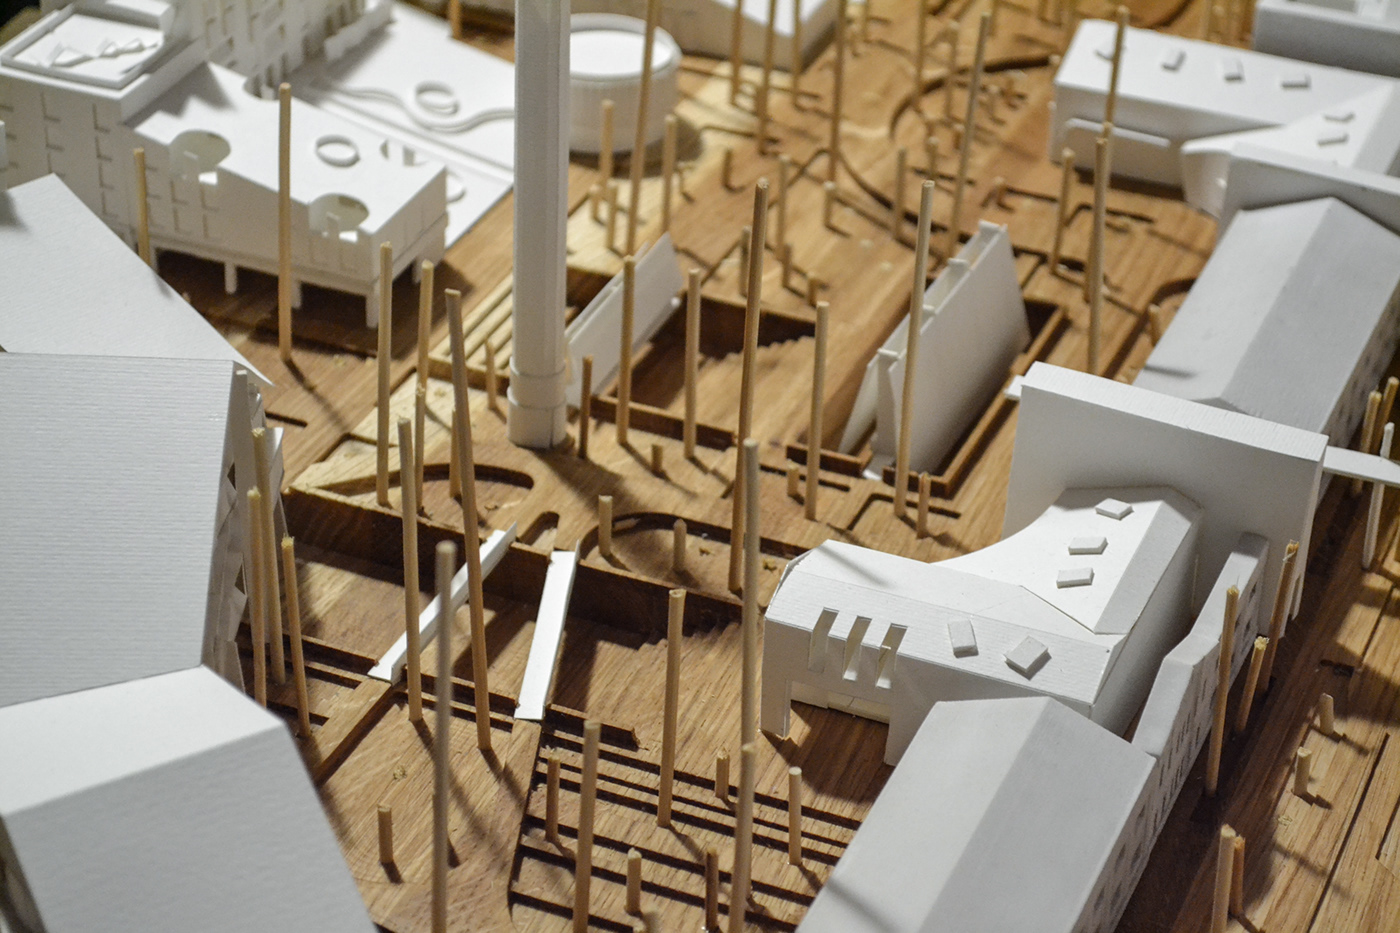 Archbiennale сантехприбор реновация архитектура макет Биеннале архбиеннале визуализация коливинг